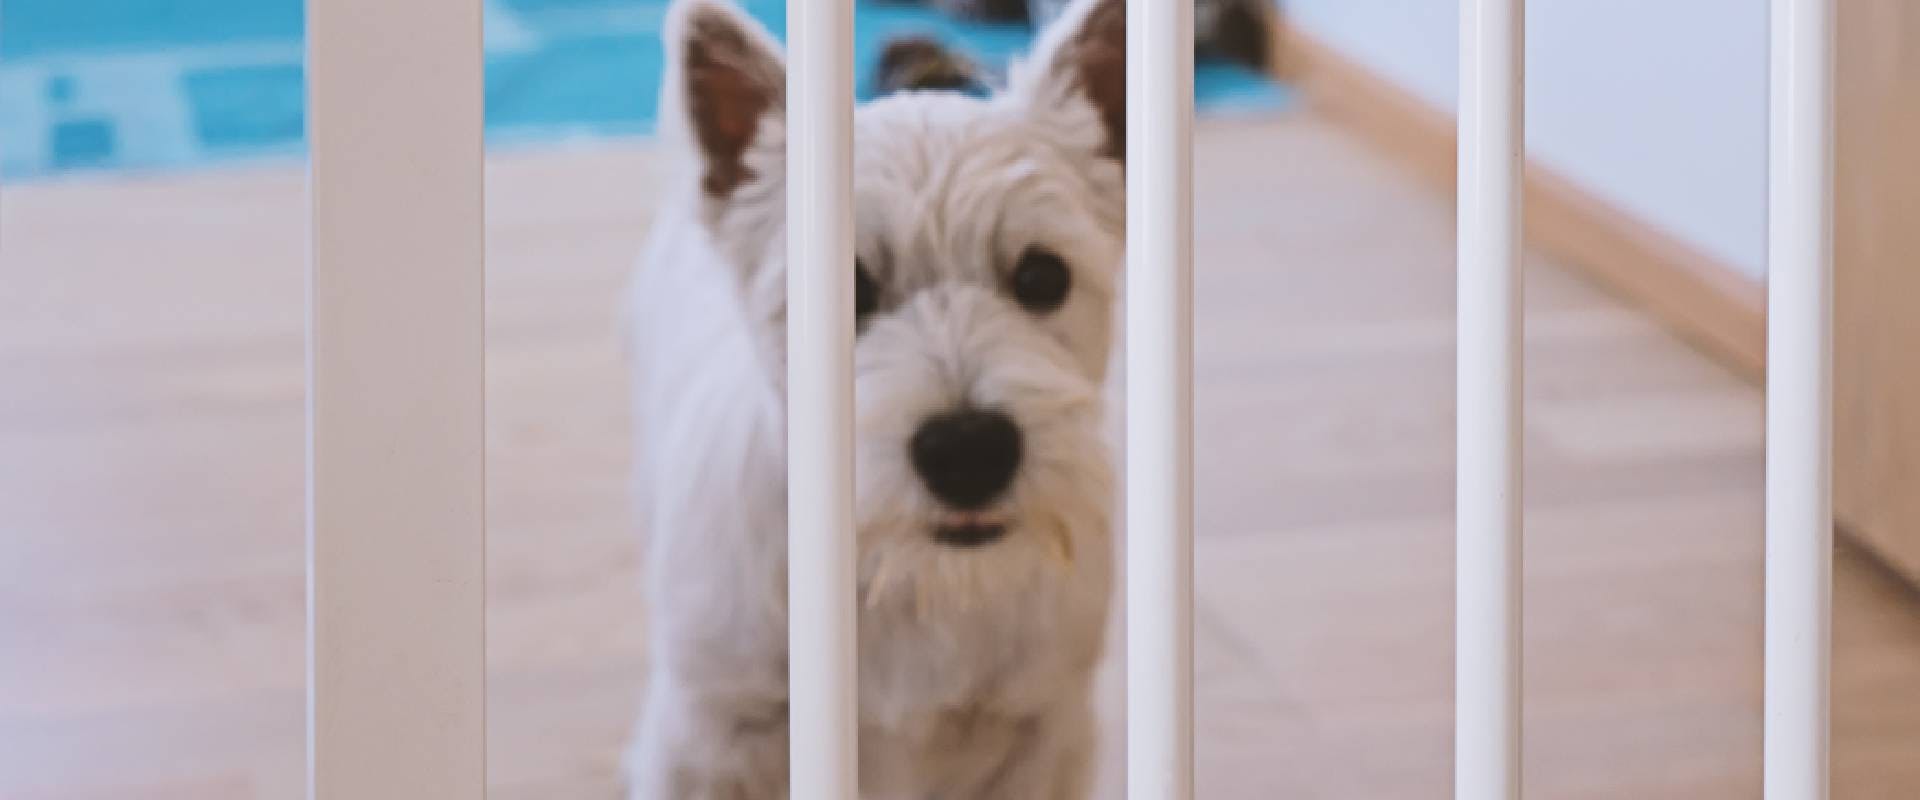 West Highland white terrier puppy behind a dog gate